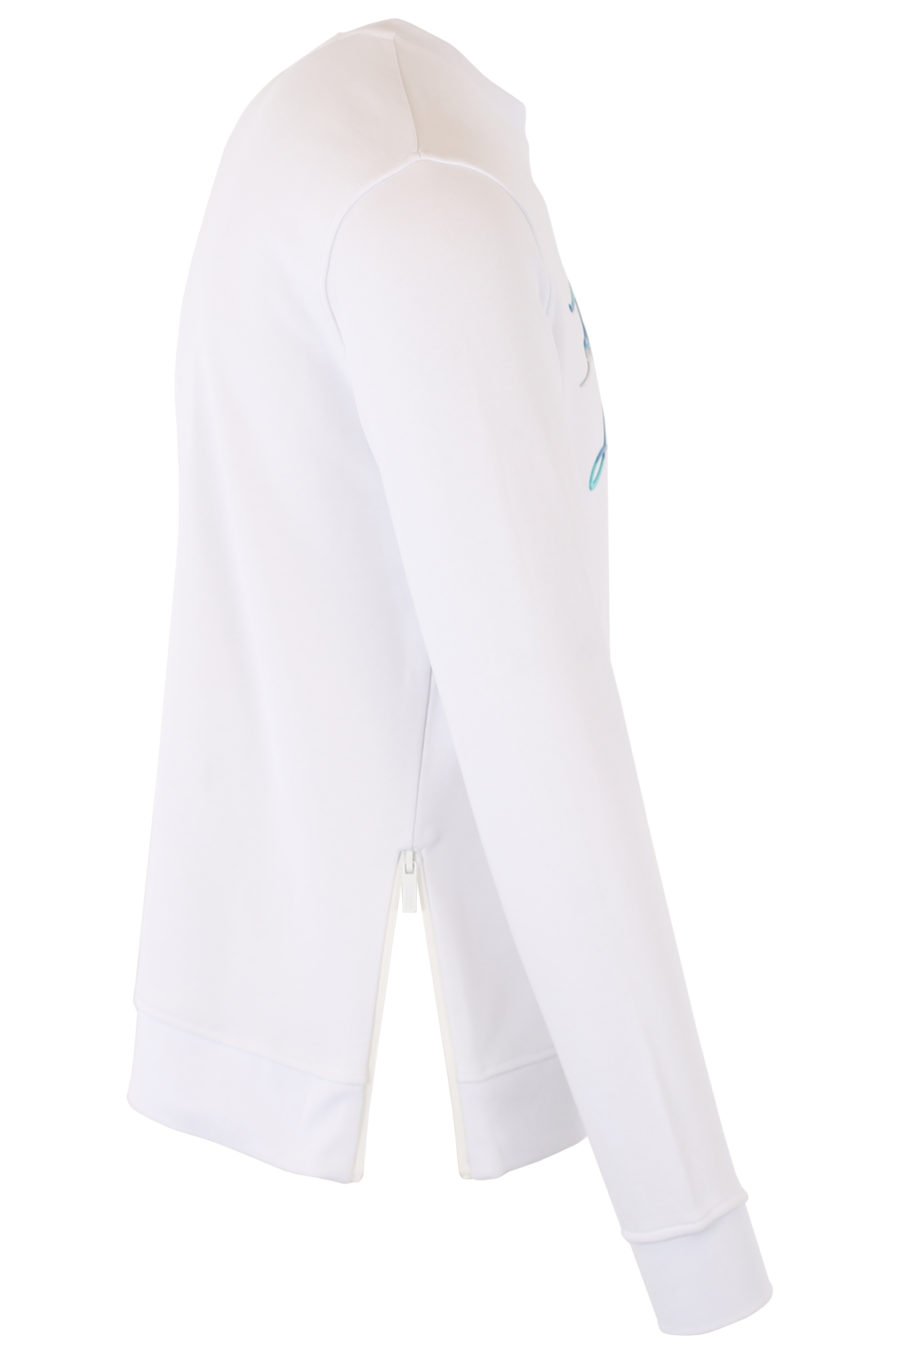 Weißes Sweatshirt mit mehrfarbigem blauem Logo - IMG 1386